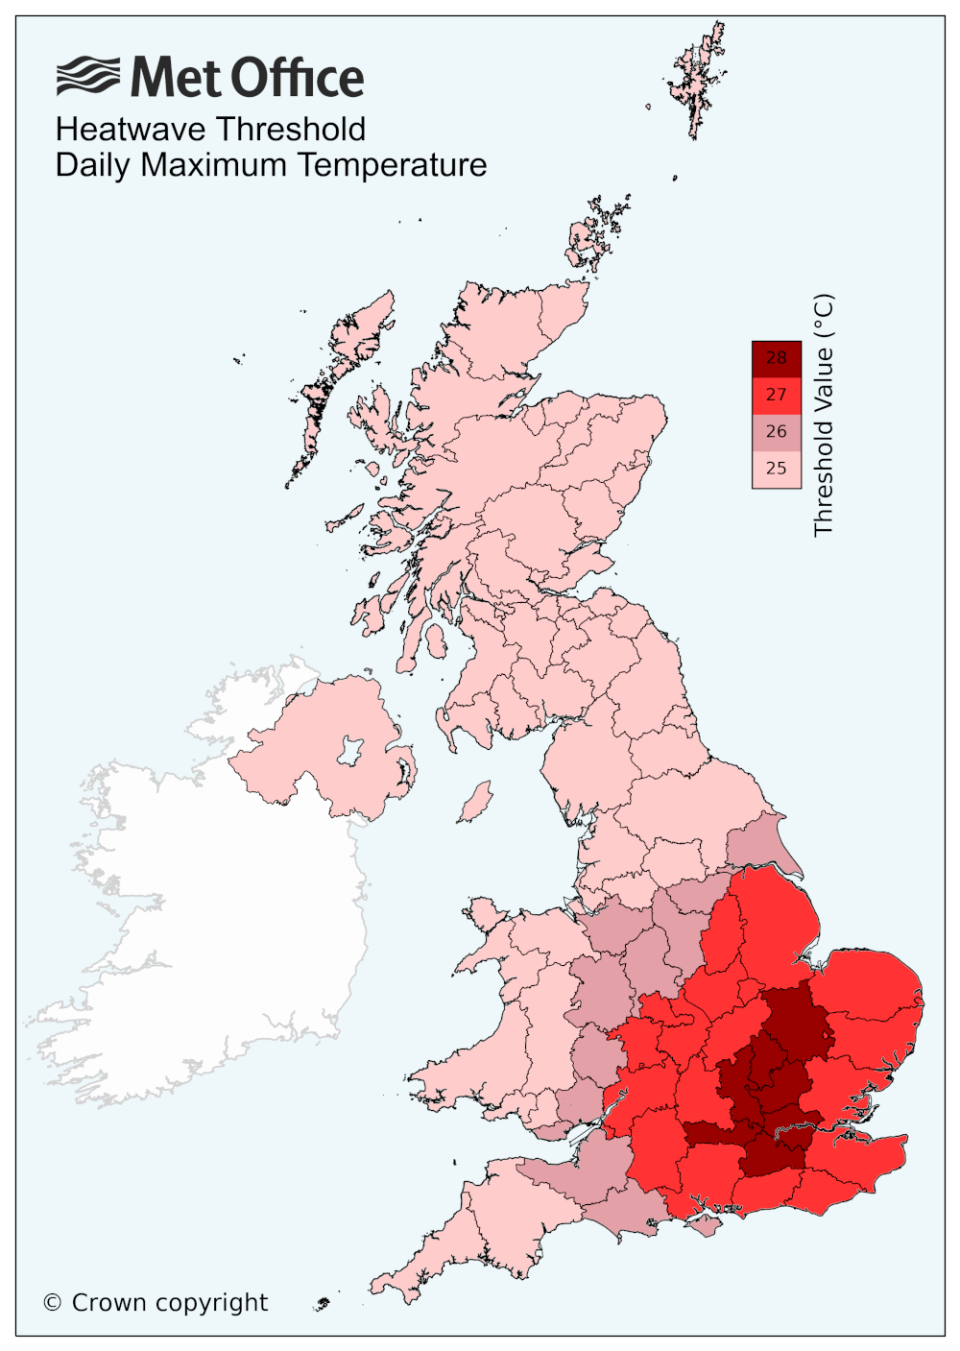 Heatwave thresholds in the UK. (Met Office)